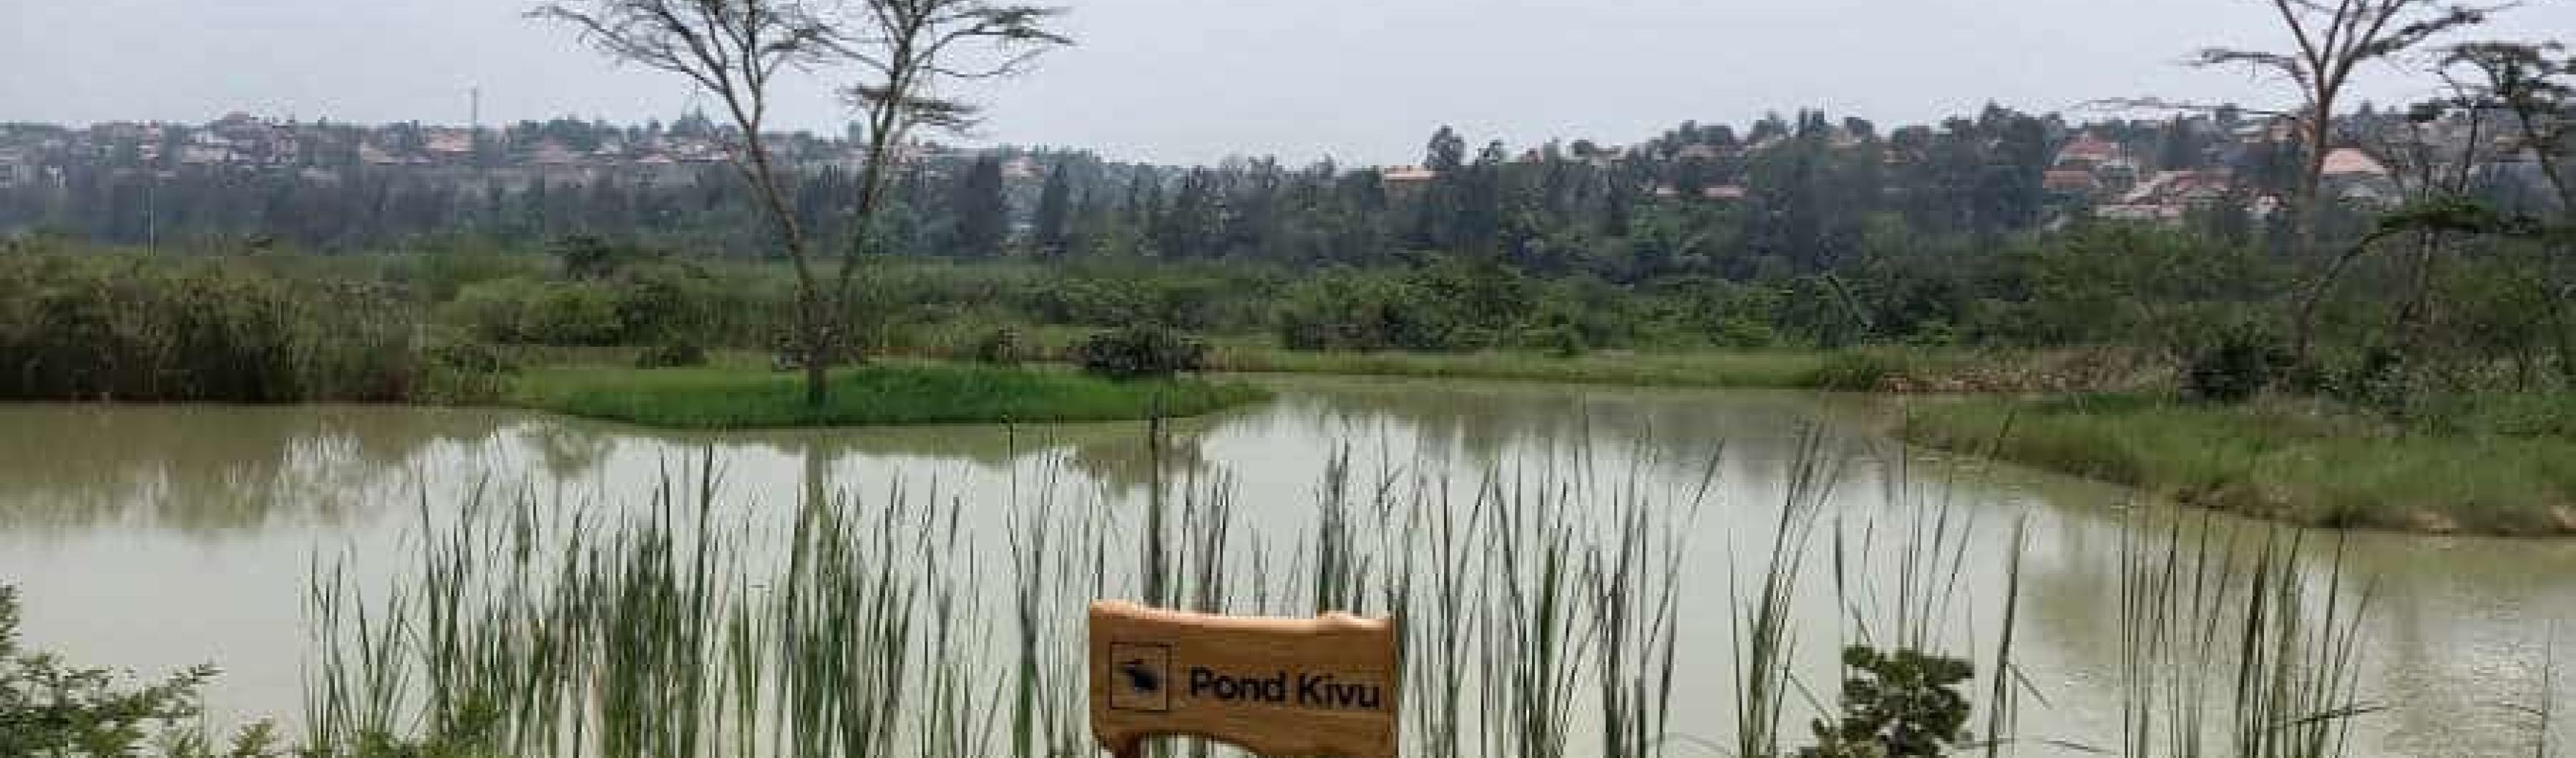 A pond in the restored Nyandungu wetland in Kigali